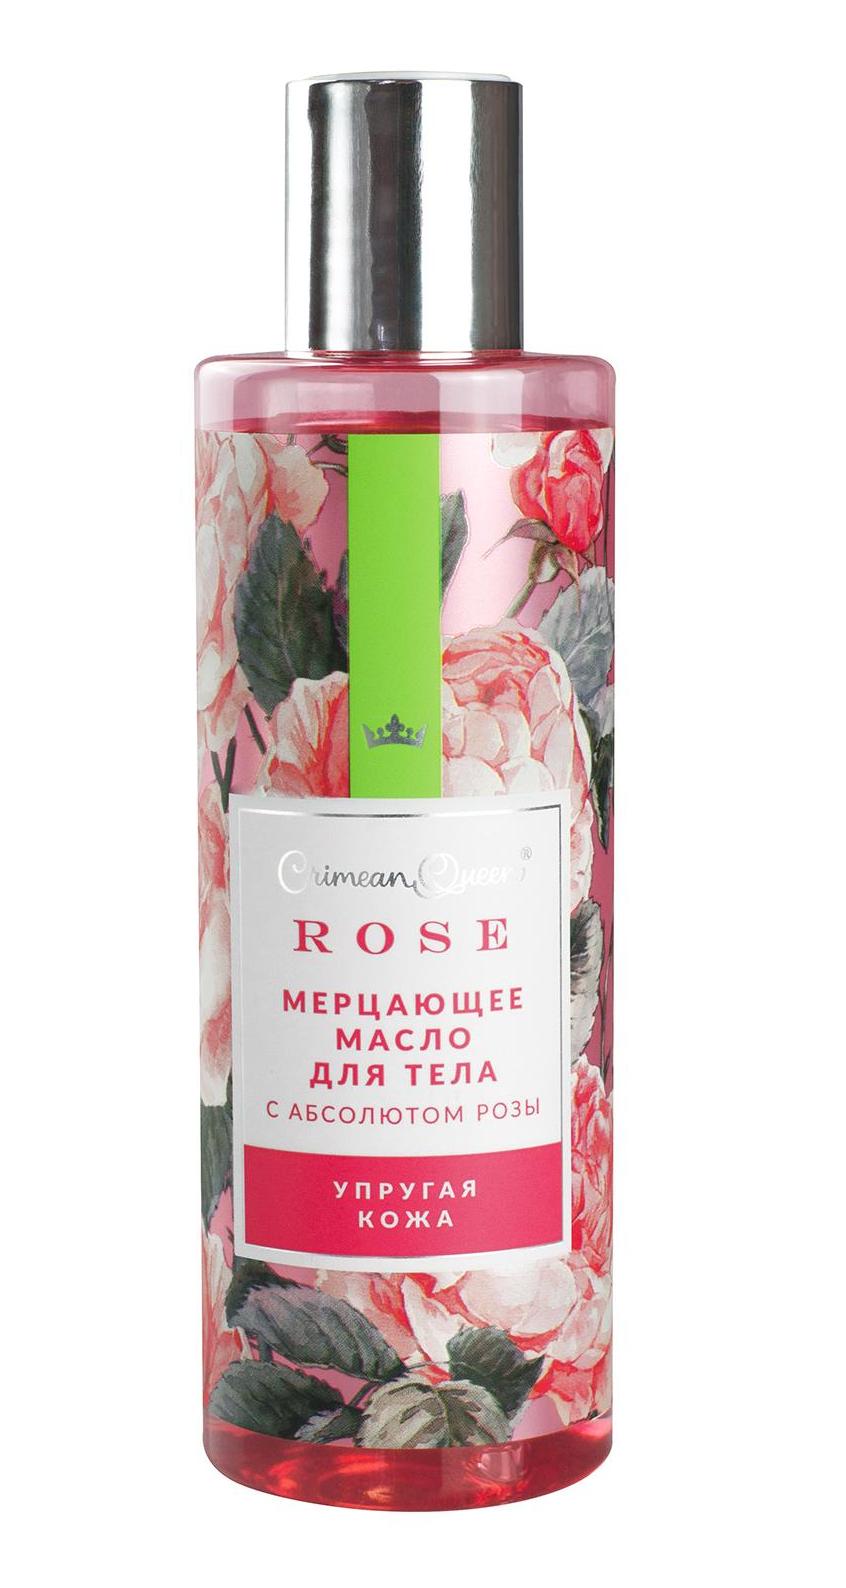 Мерцающее масло для тела с абсолютом розы Упругая кожа, 170г купить в онлайн экомаркете